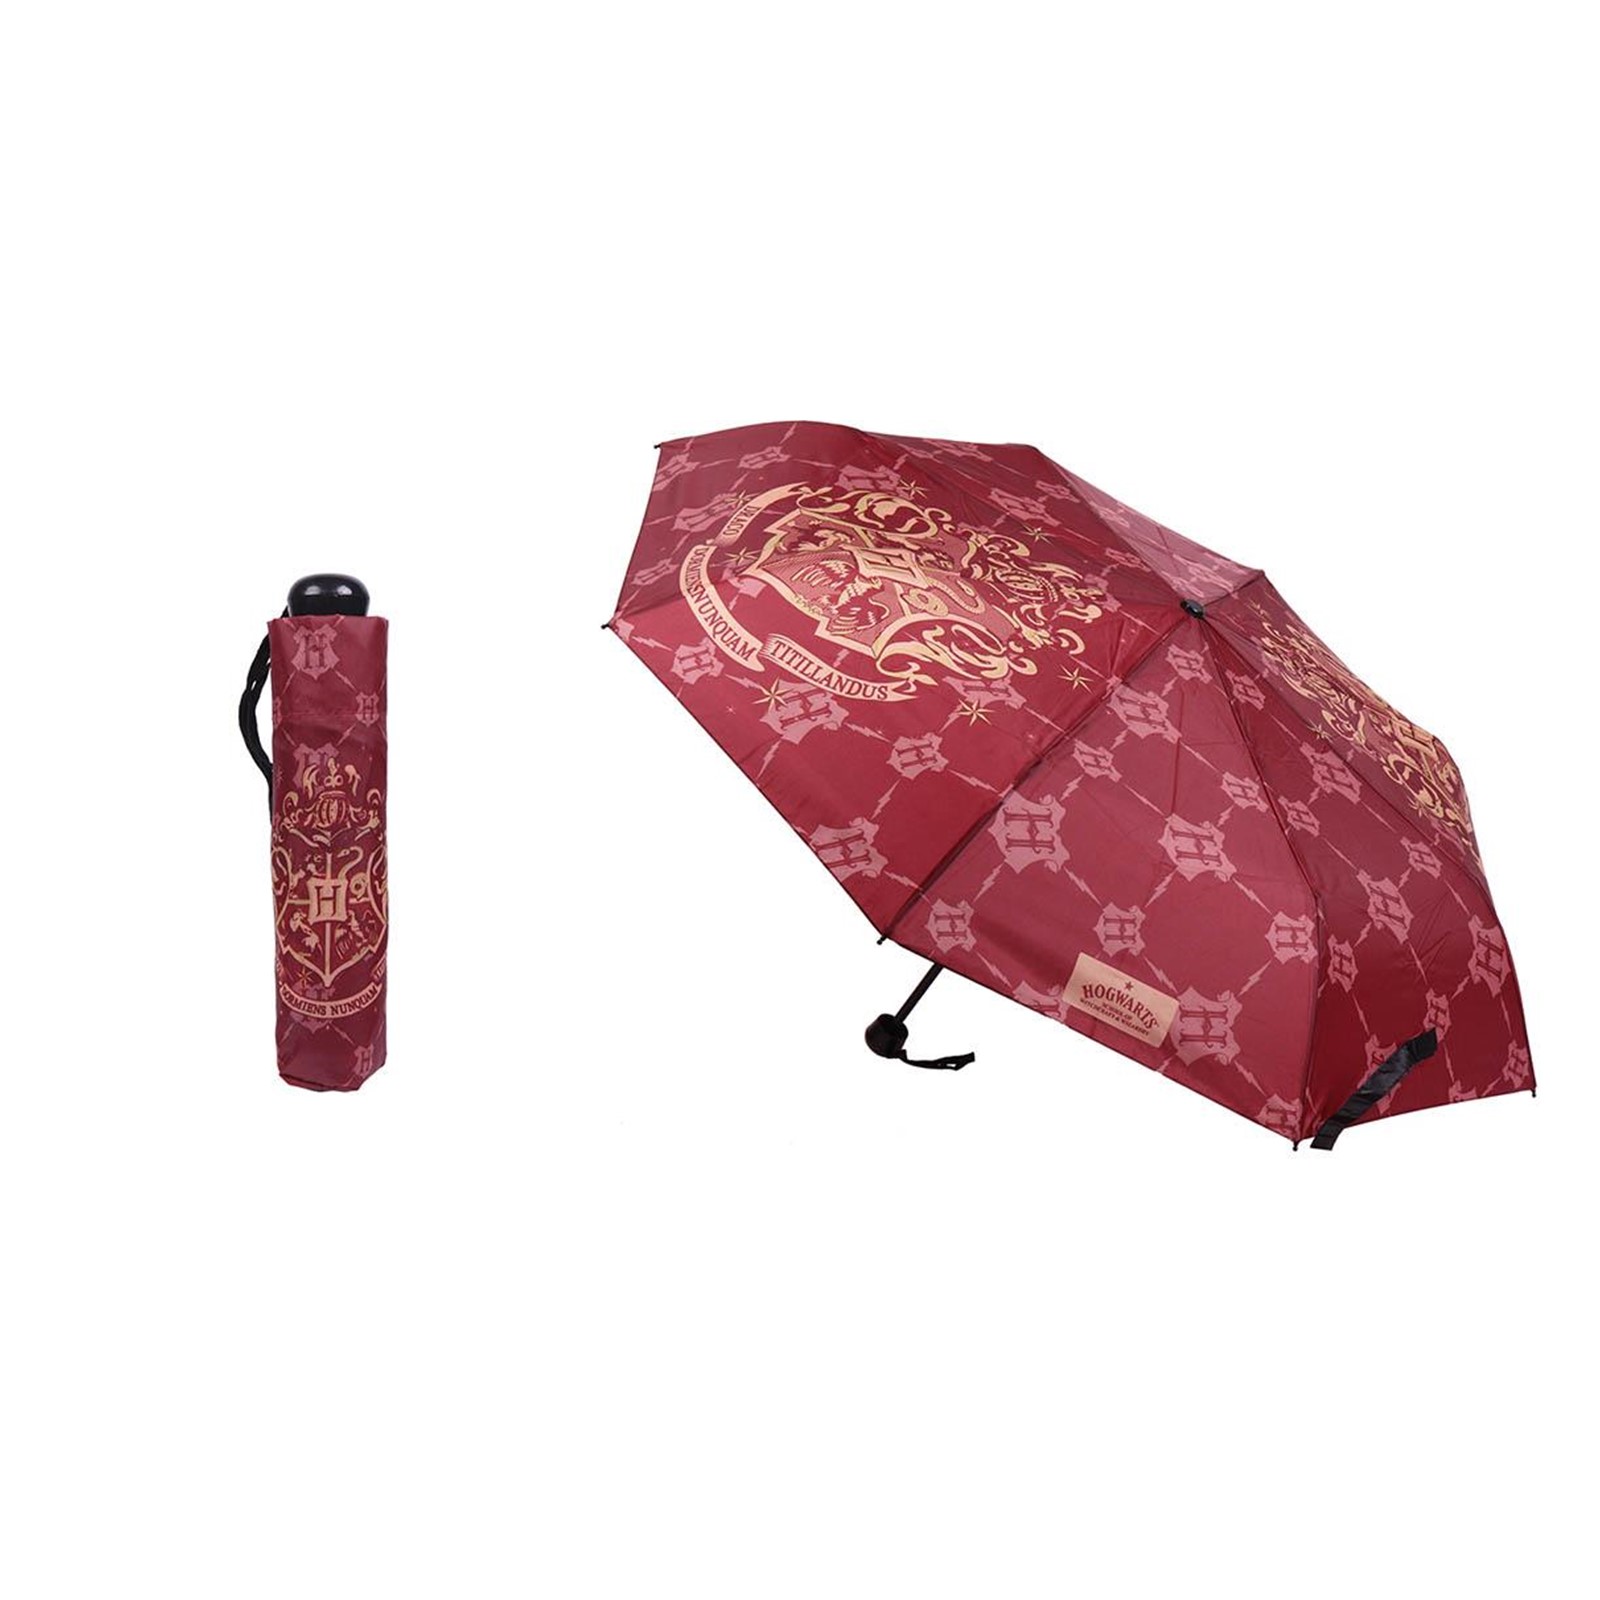 parapluie Harry Potter poudlard rouge cerda